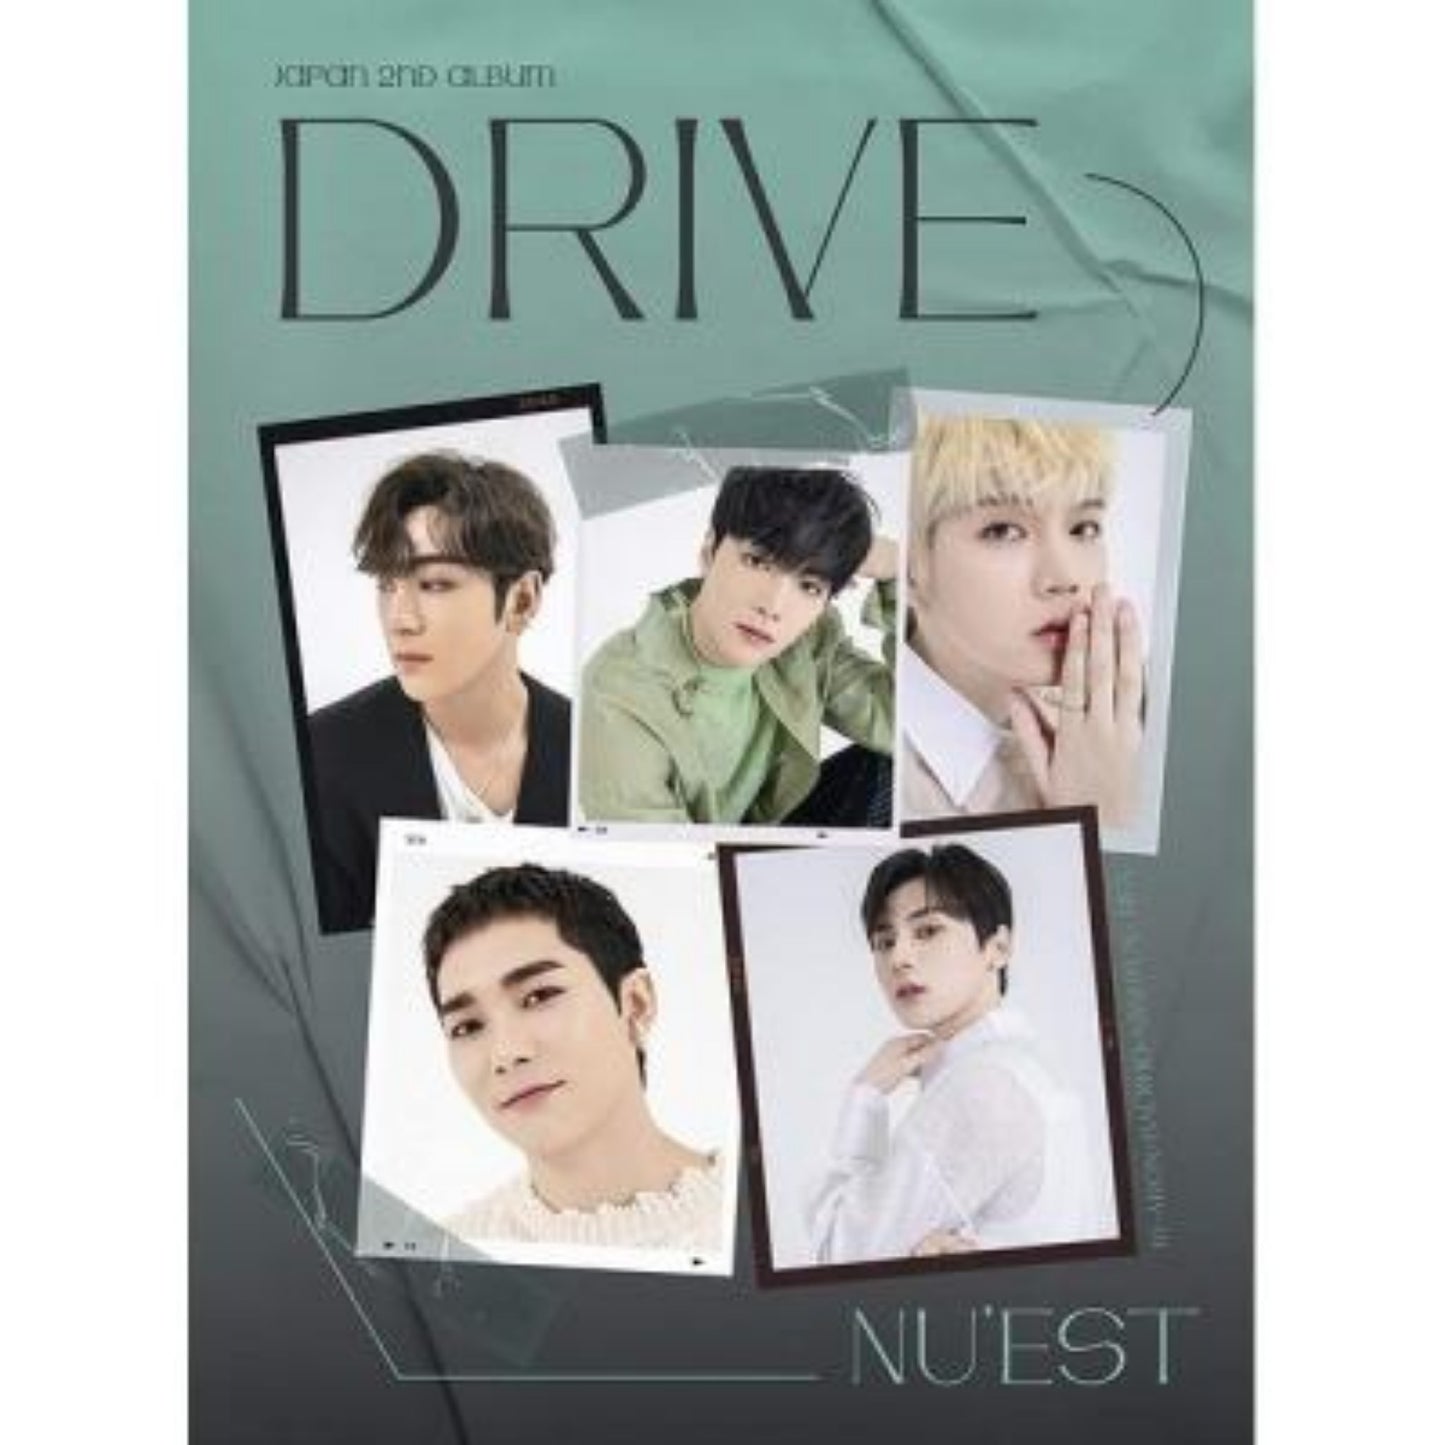 نيست - البوم ياباني : نوع قيادة اي | (ONE) Nu'est - Japan album : Drive Type A